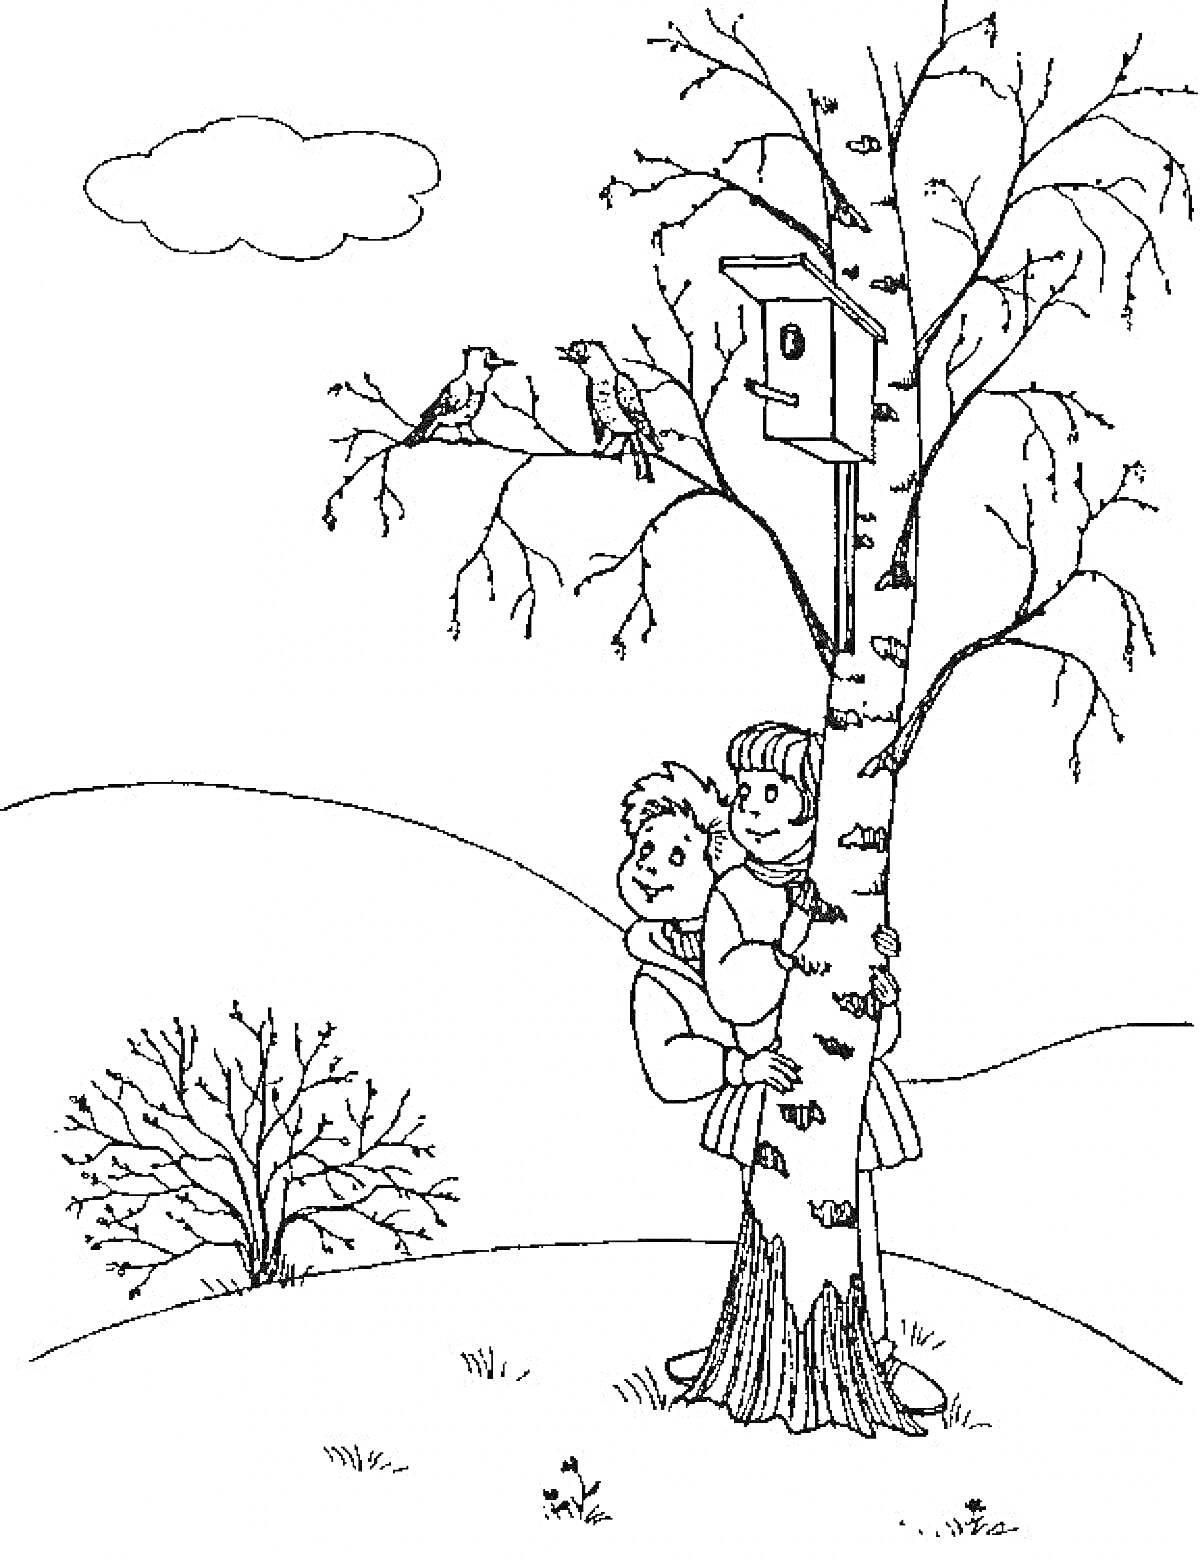 Весенний пейзаж с детьми под деревом, гнездом и птицами на холме